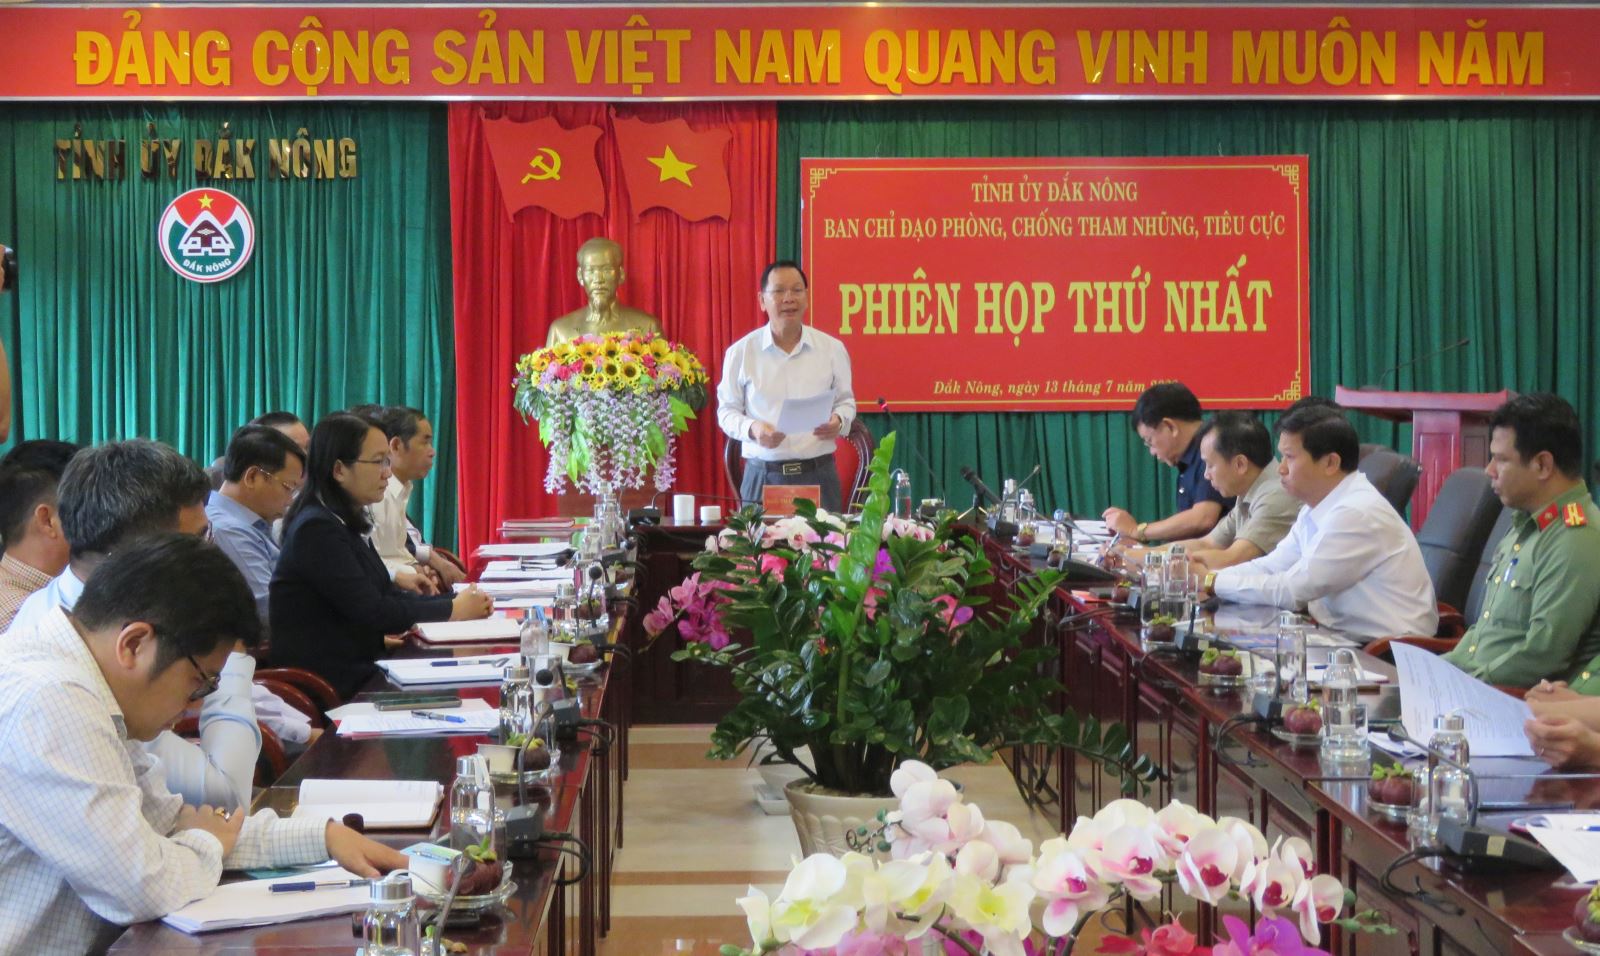 Phiên họp thứ nhất Ban Chỉ đạo phòng, chống tham nhũng, tiêu cực tỉnh Đắk Nông 